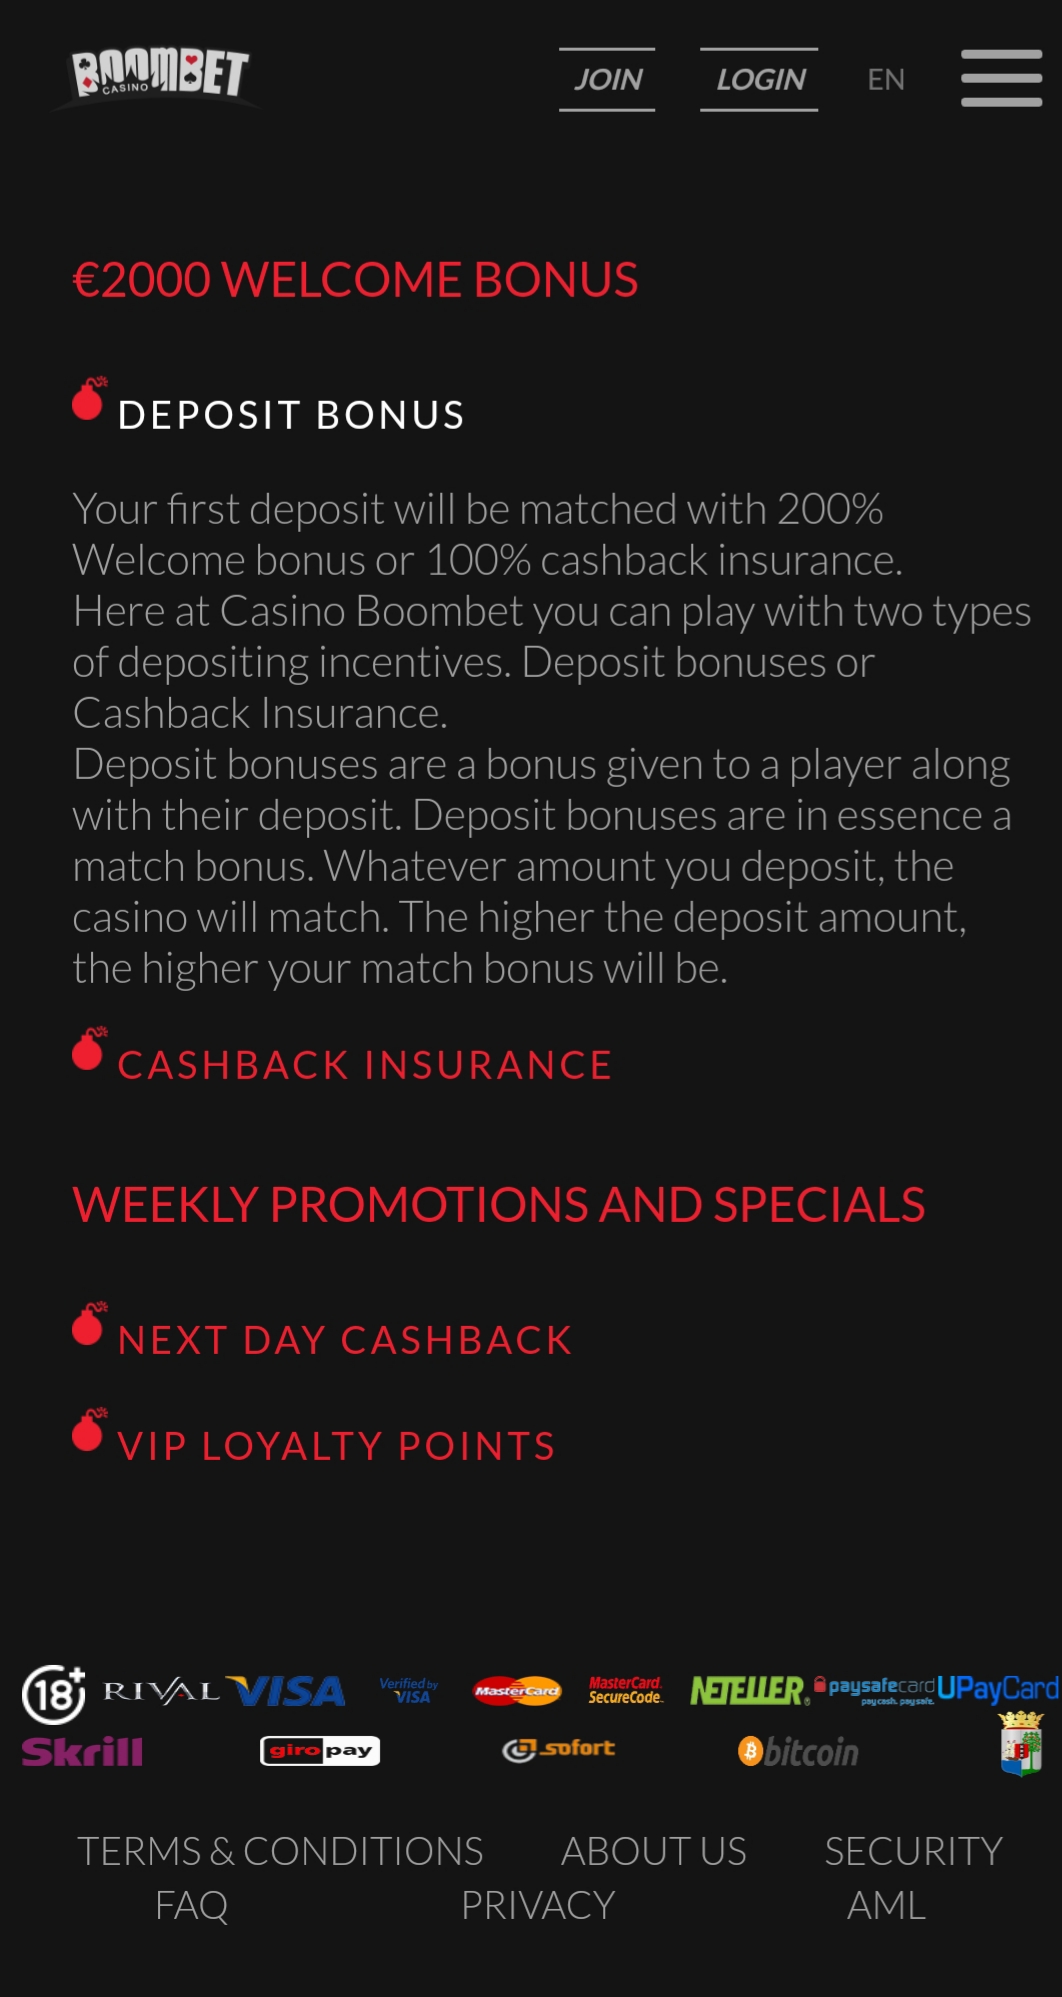 Boombet Casino Mobile No Deposit Bonus Review